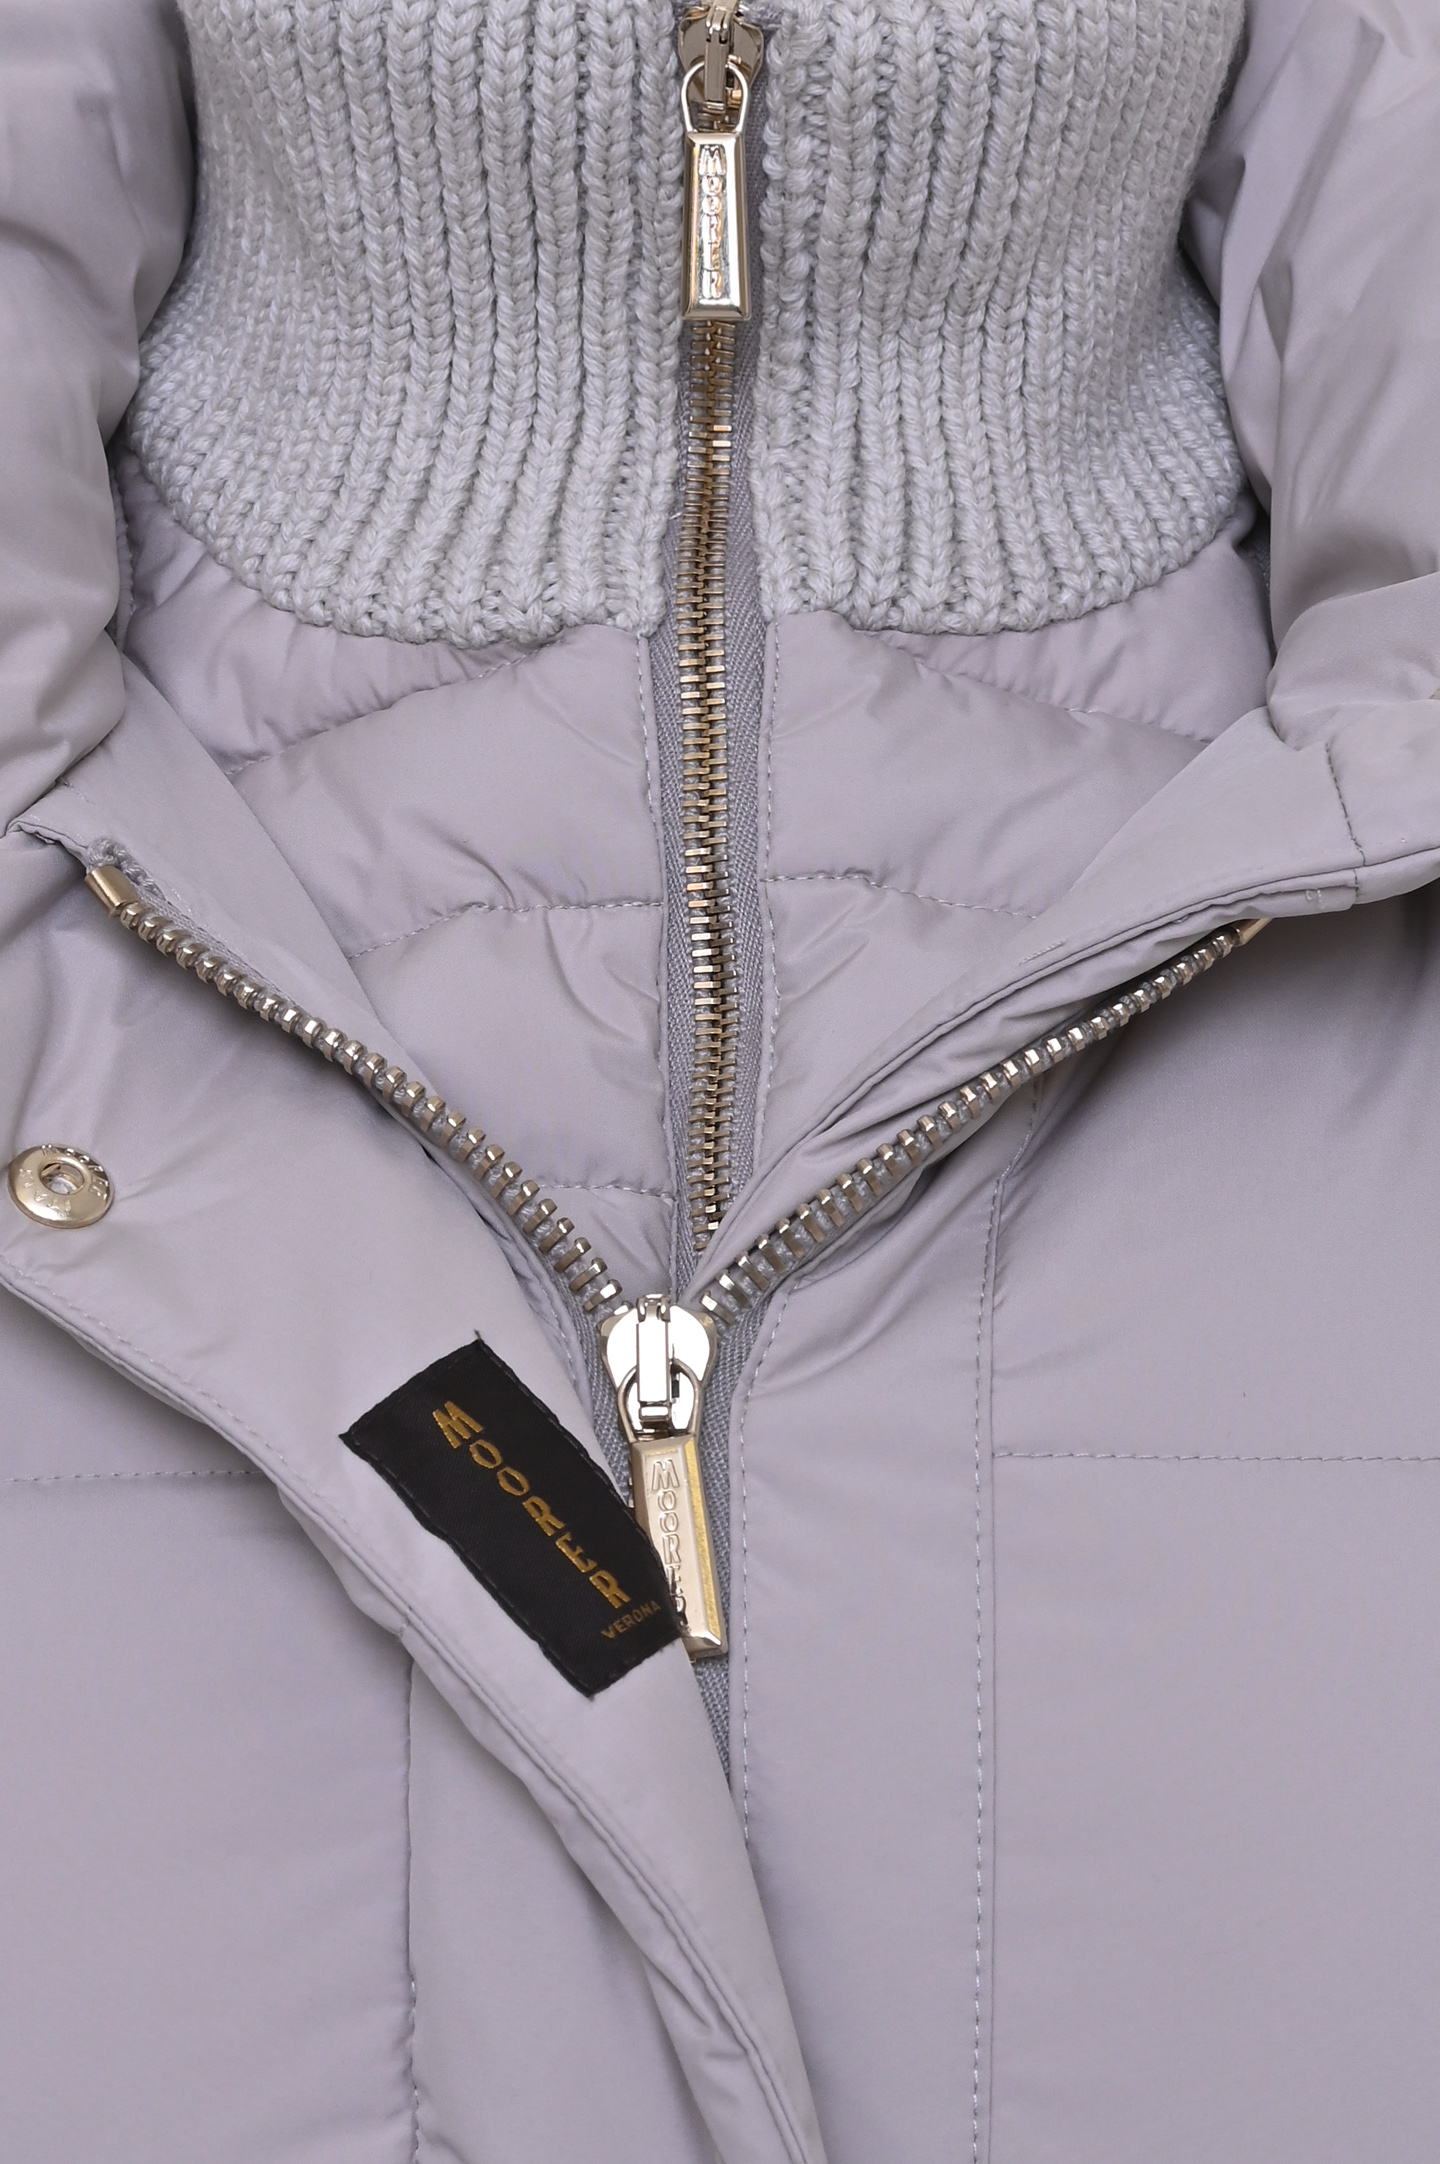 Куртка MOORER TALASSA STP, цвет: Серый, Женский